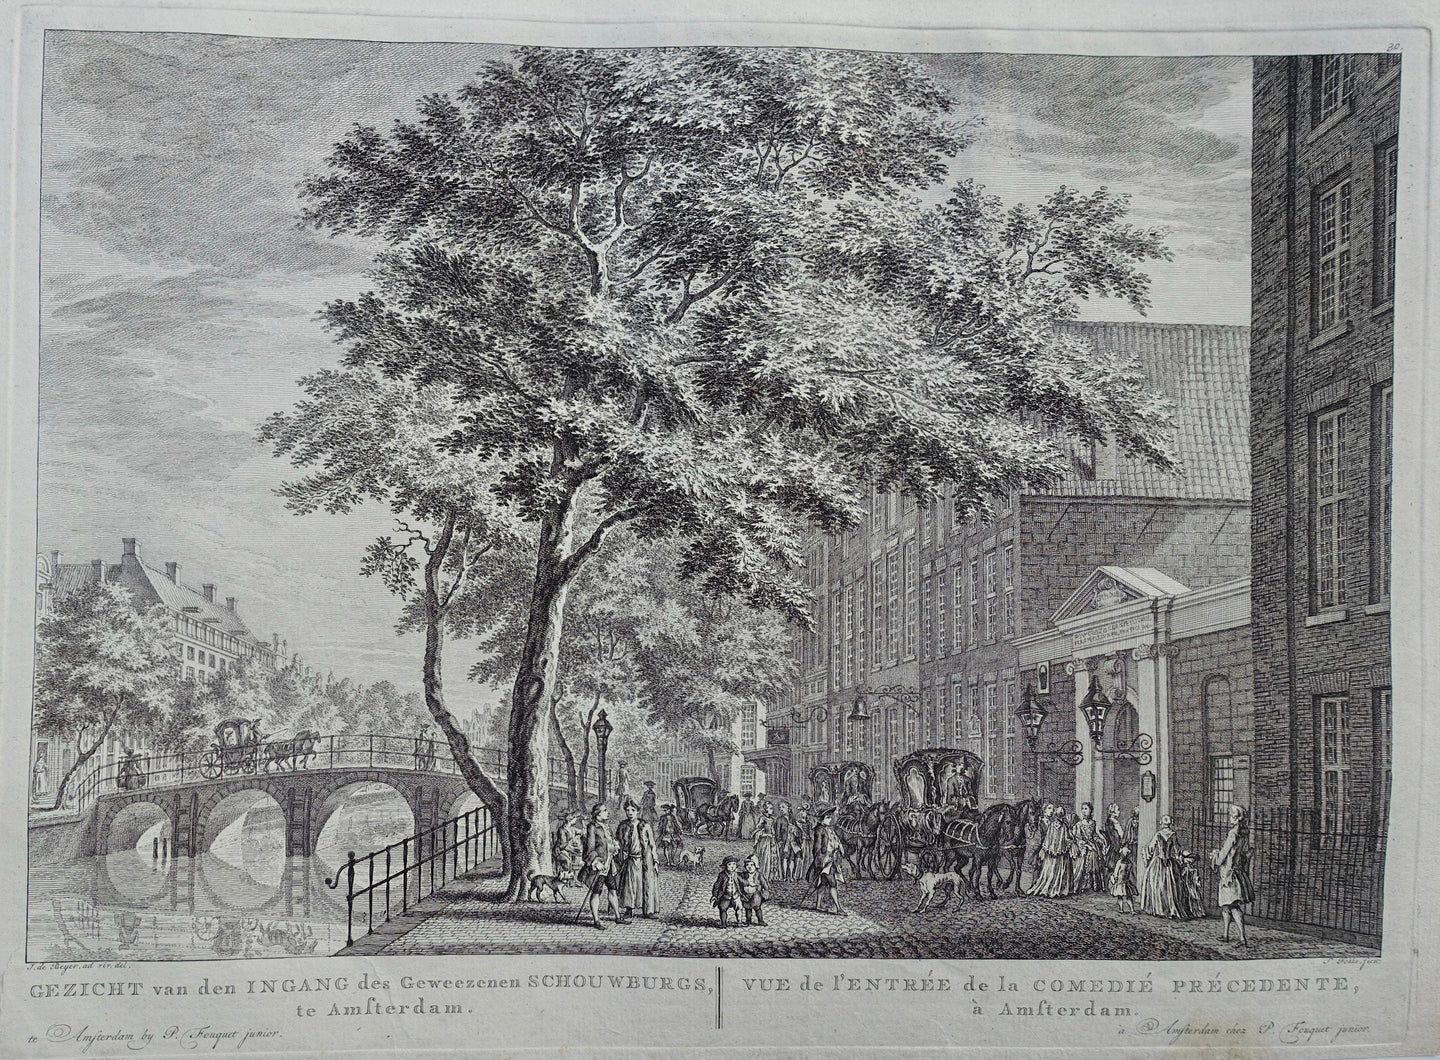 Amsterdam Keizersgracht Ingang voormalige schouwburg - P Fouquet - 1783